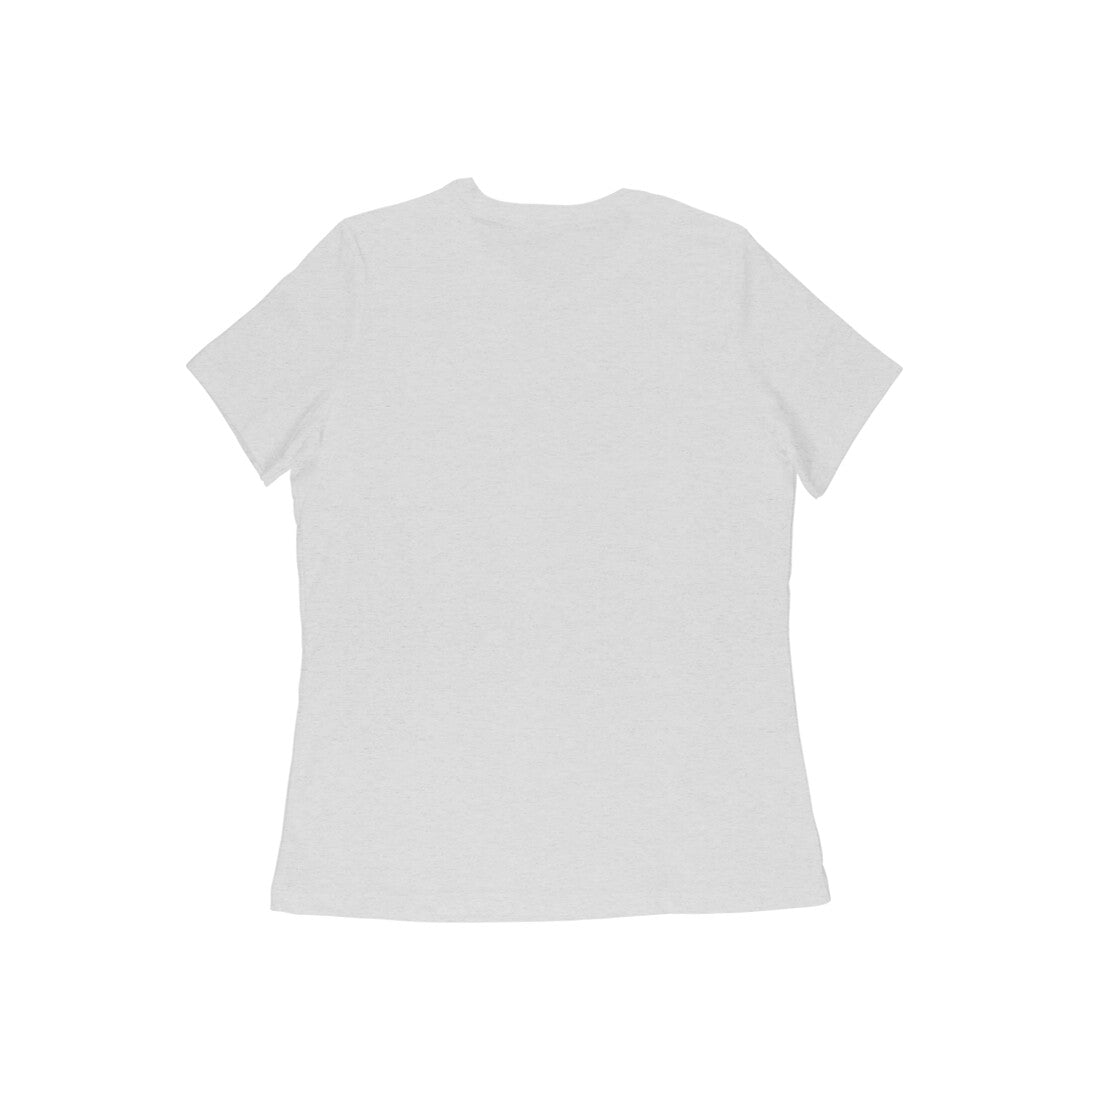 Stylish Women T-shirts Printrove